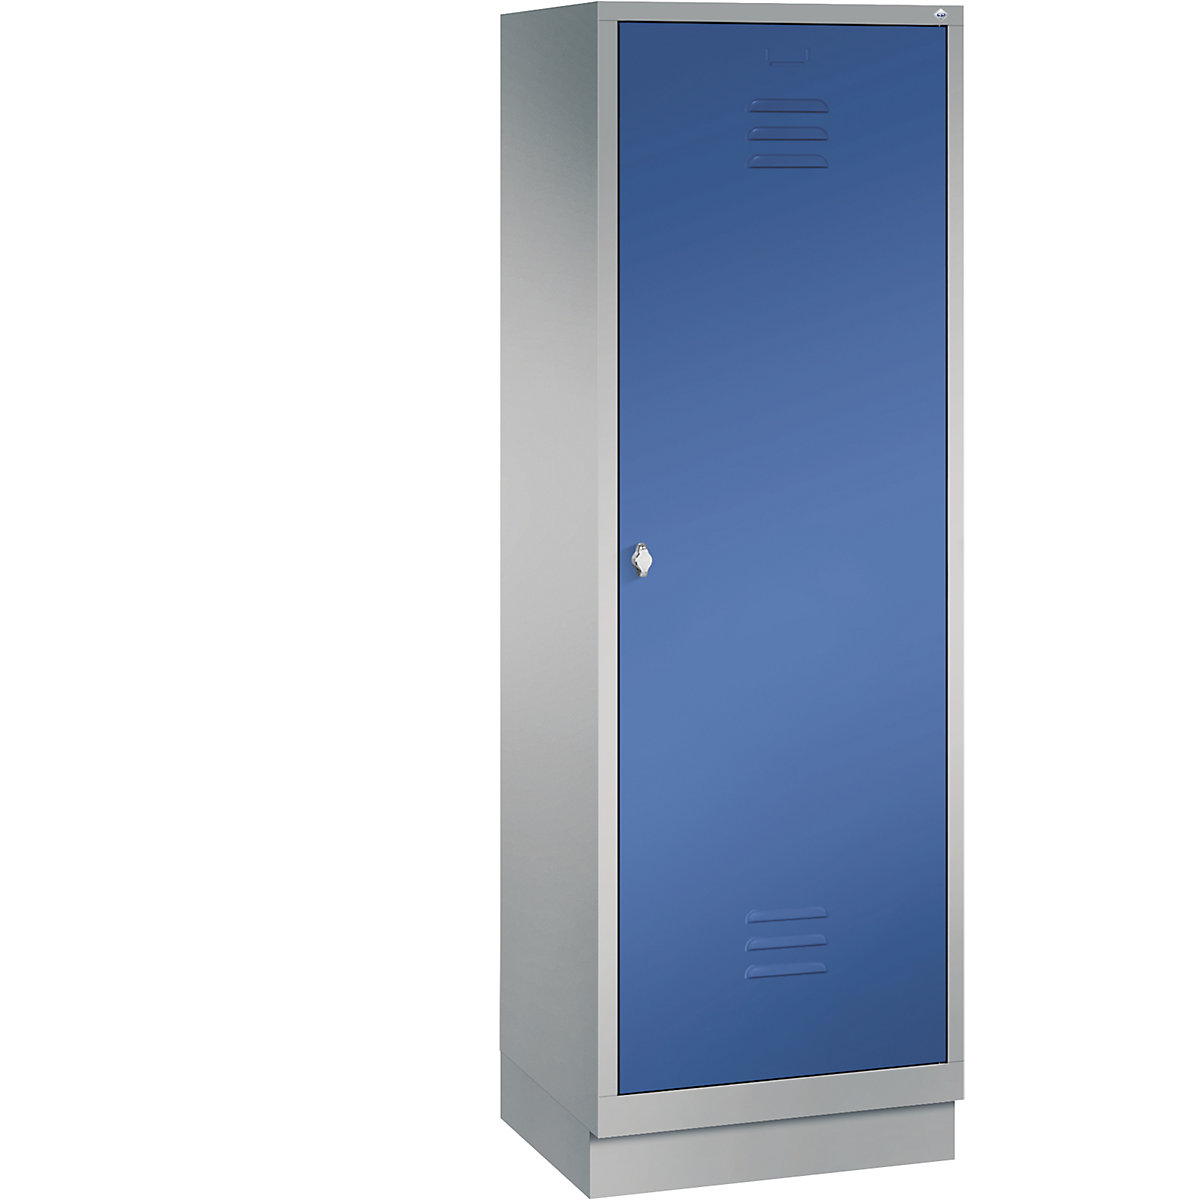 Šatní skříň se soklem CLASSIC s dveřmi přes 2 oddíly – C+P, 2 oddíly, šířka oddílu 300 mm, bílý hliník / enciánová modrá